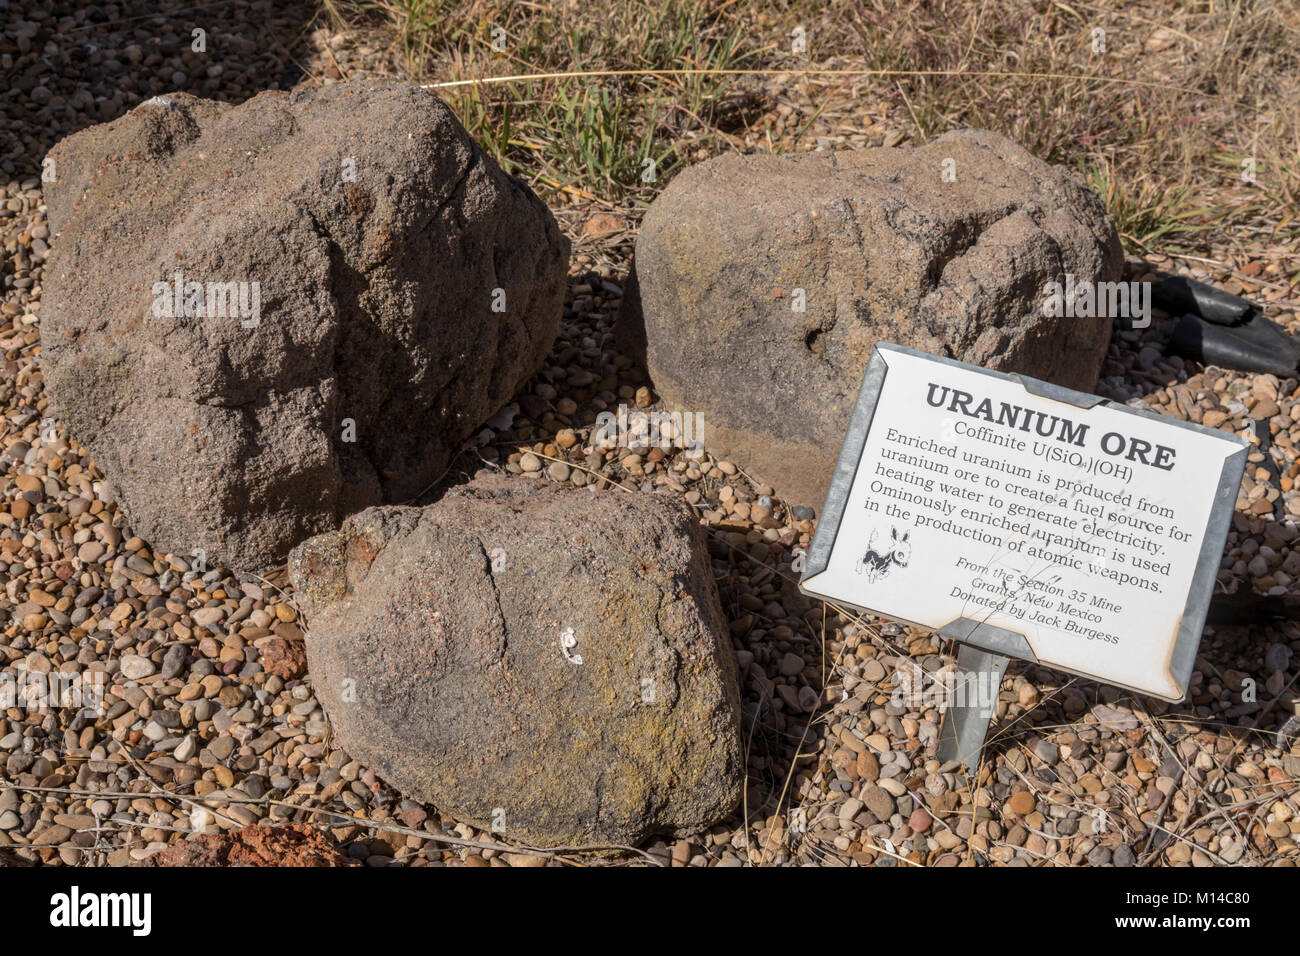 Fort Davis, Texas - El uranio en el Desierto Chihuahuense herencia minera exhibición en el Chihuahuan Desert Research Institute. El mineral proviene de un mín. Foto de stock